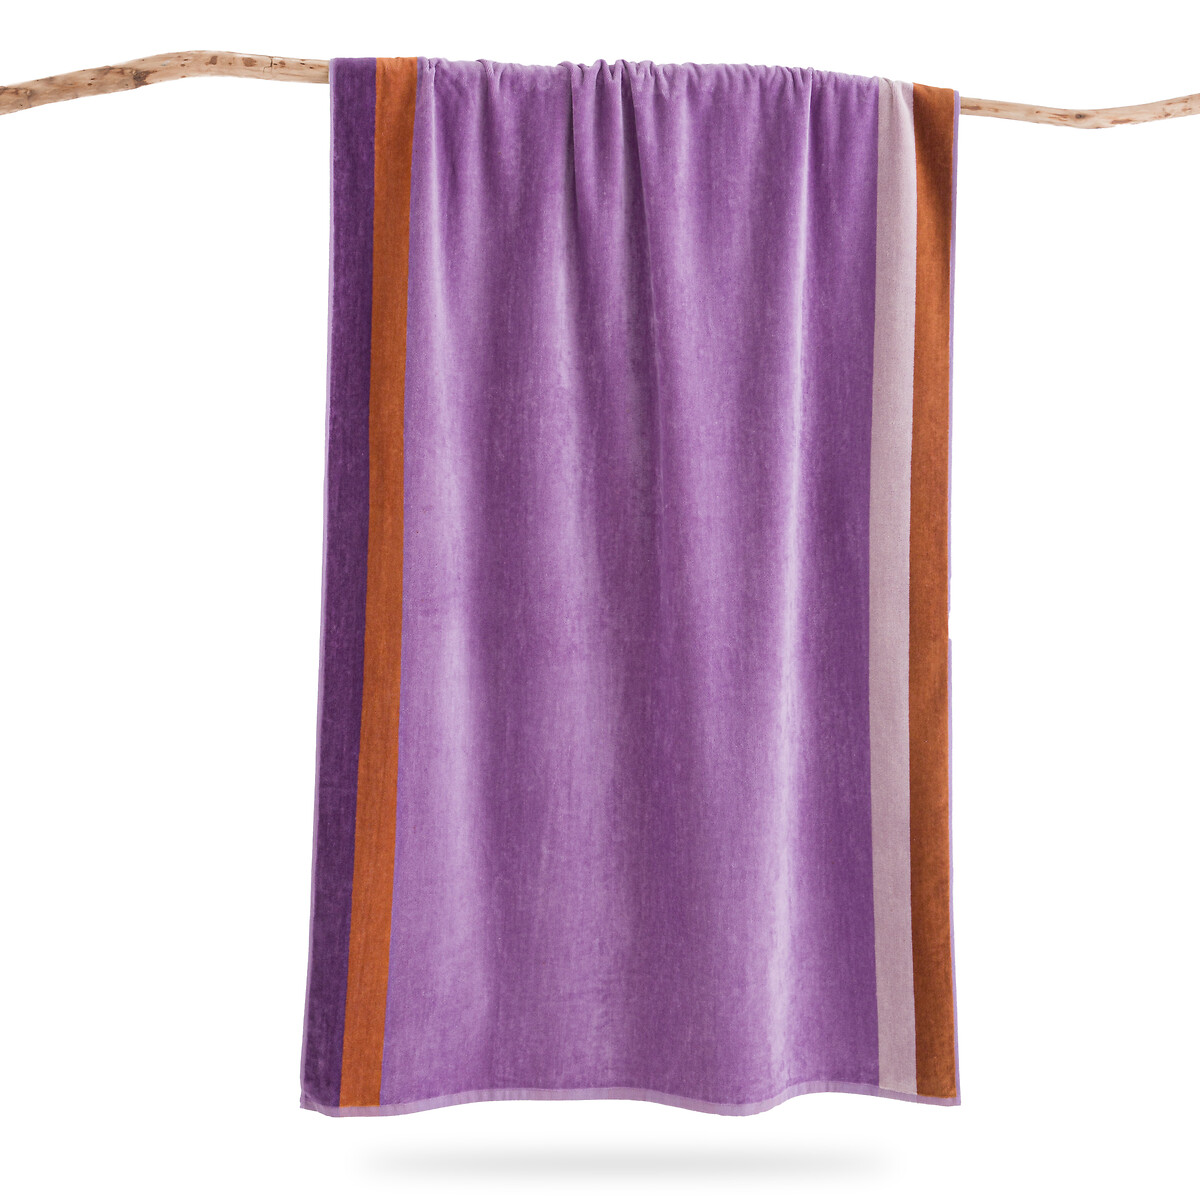 Полотенце пляжное махровое из велюра 420 г Valparaiso  единый размер фиолетовый